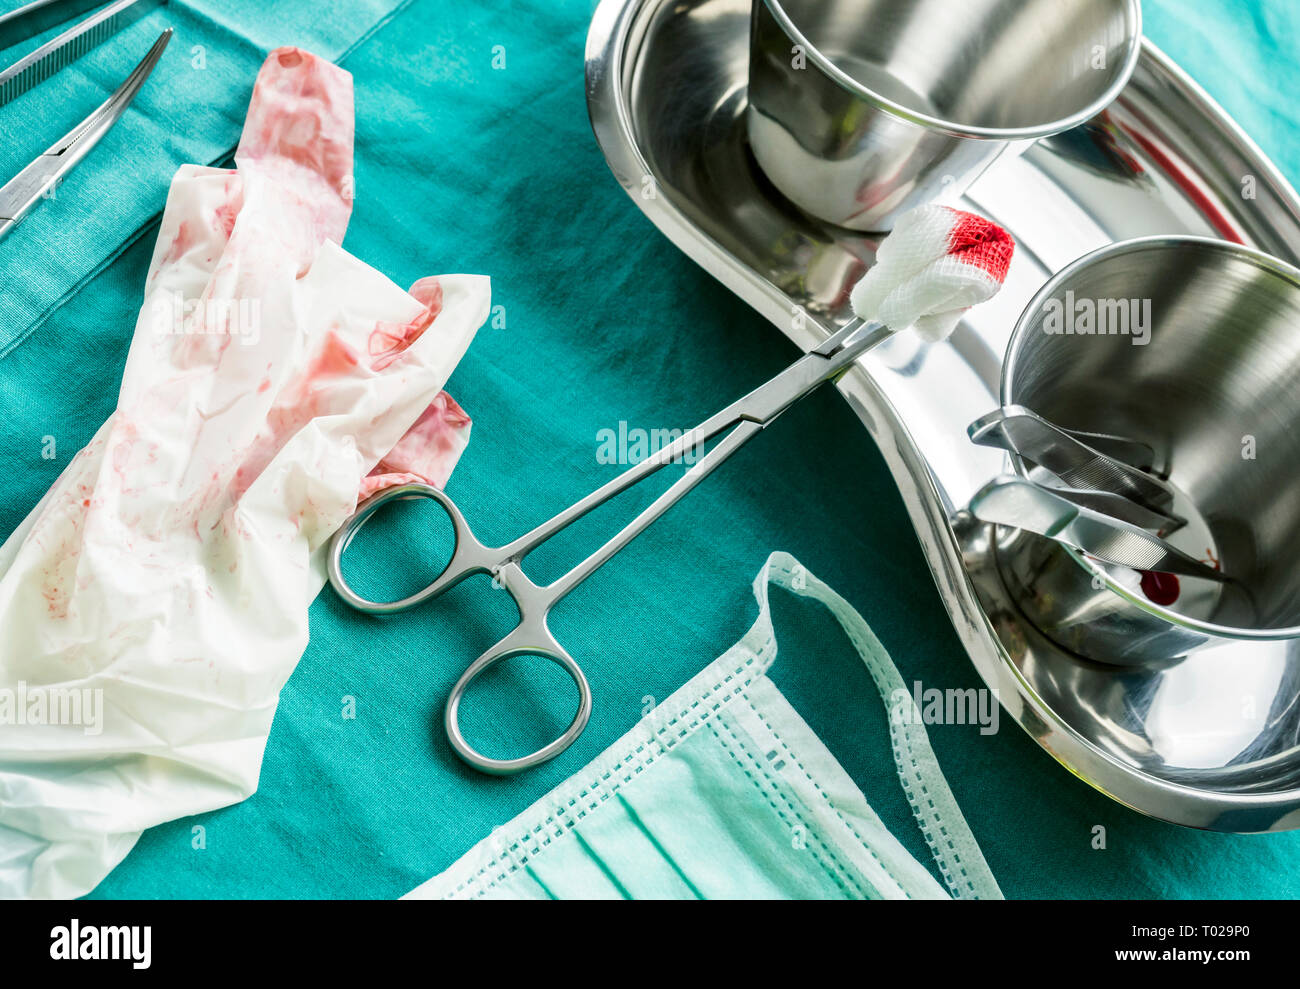 Szene Details der Operationssaal nach dem chirurgischen Eingriff, Handschuhe mit Blut beschmutzt, Container, Pinzette und Schere entlang der Naht, konzeptionelle Ima Stockfoto